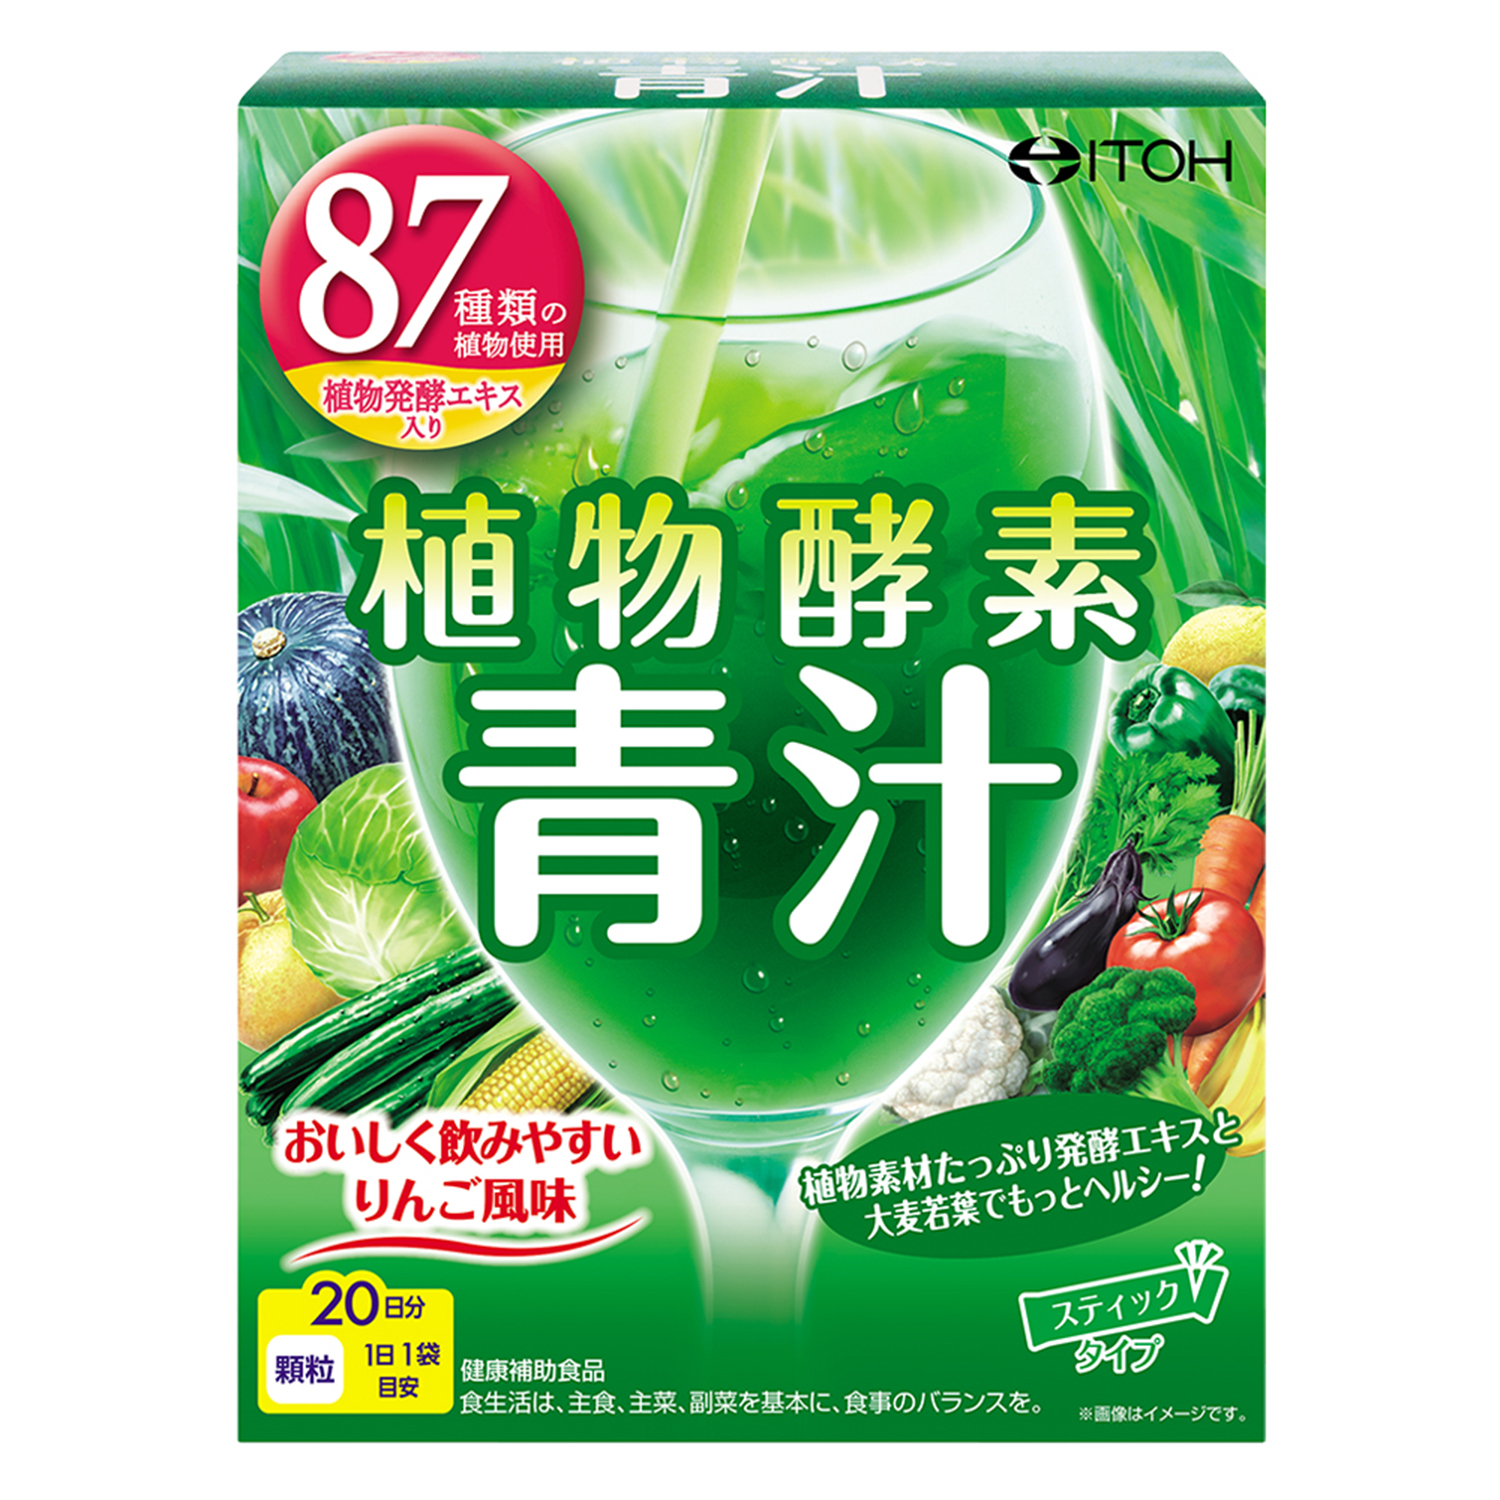 ボール 酸素青汁109種類の植物発酵エキス入り 25包 × 19箱 0sghC 